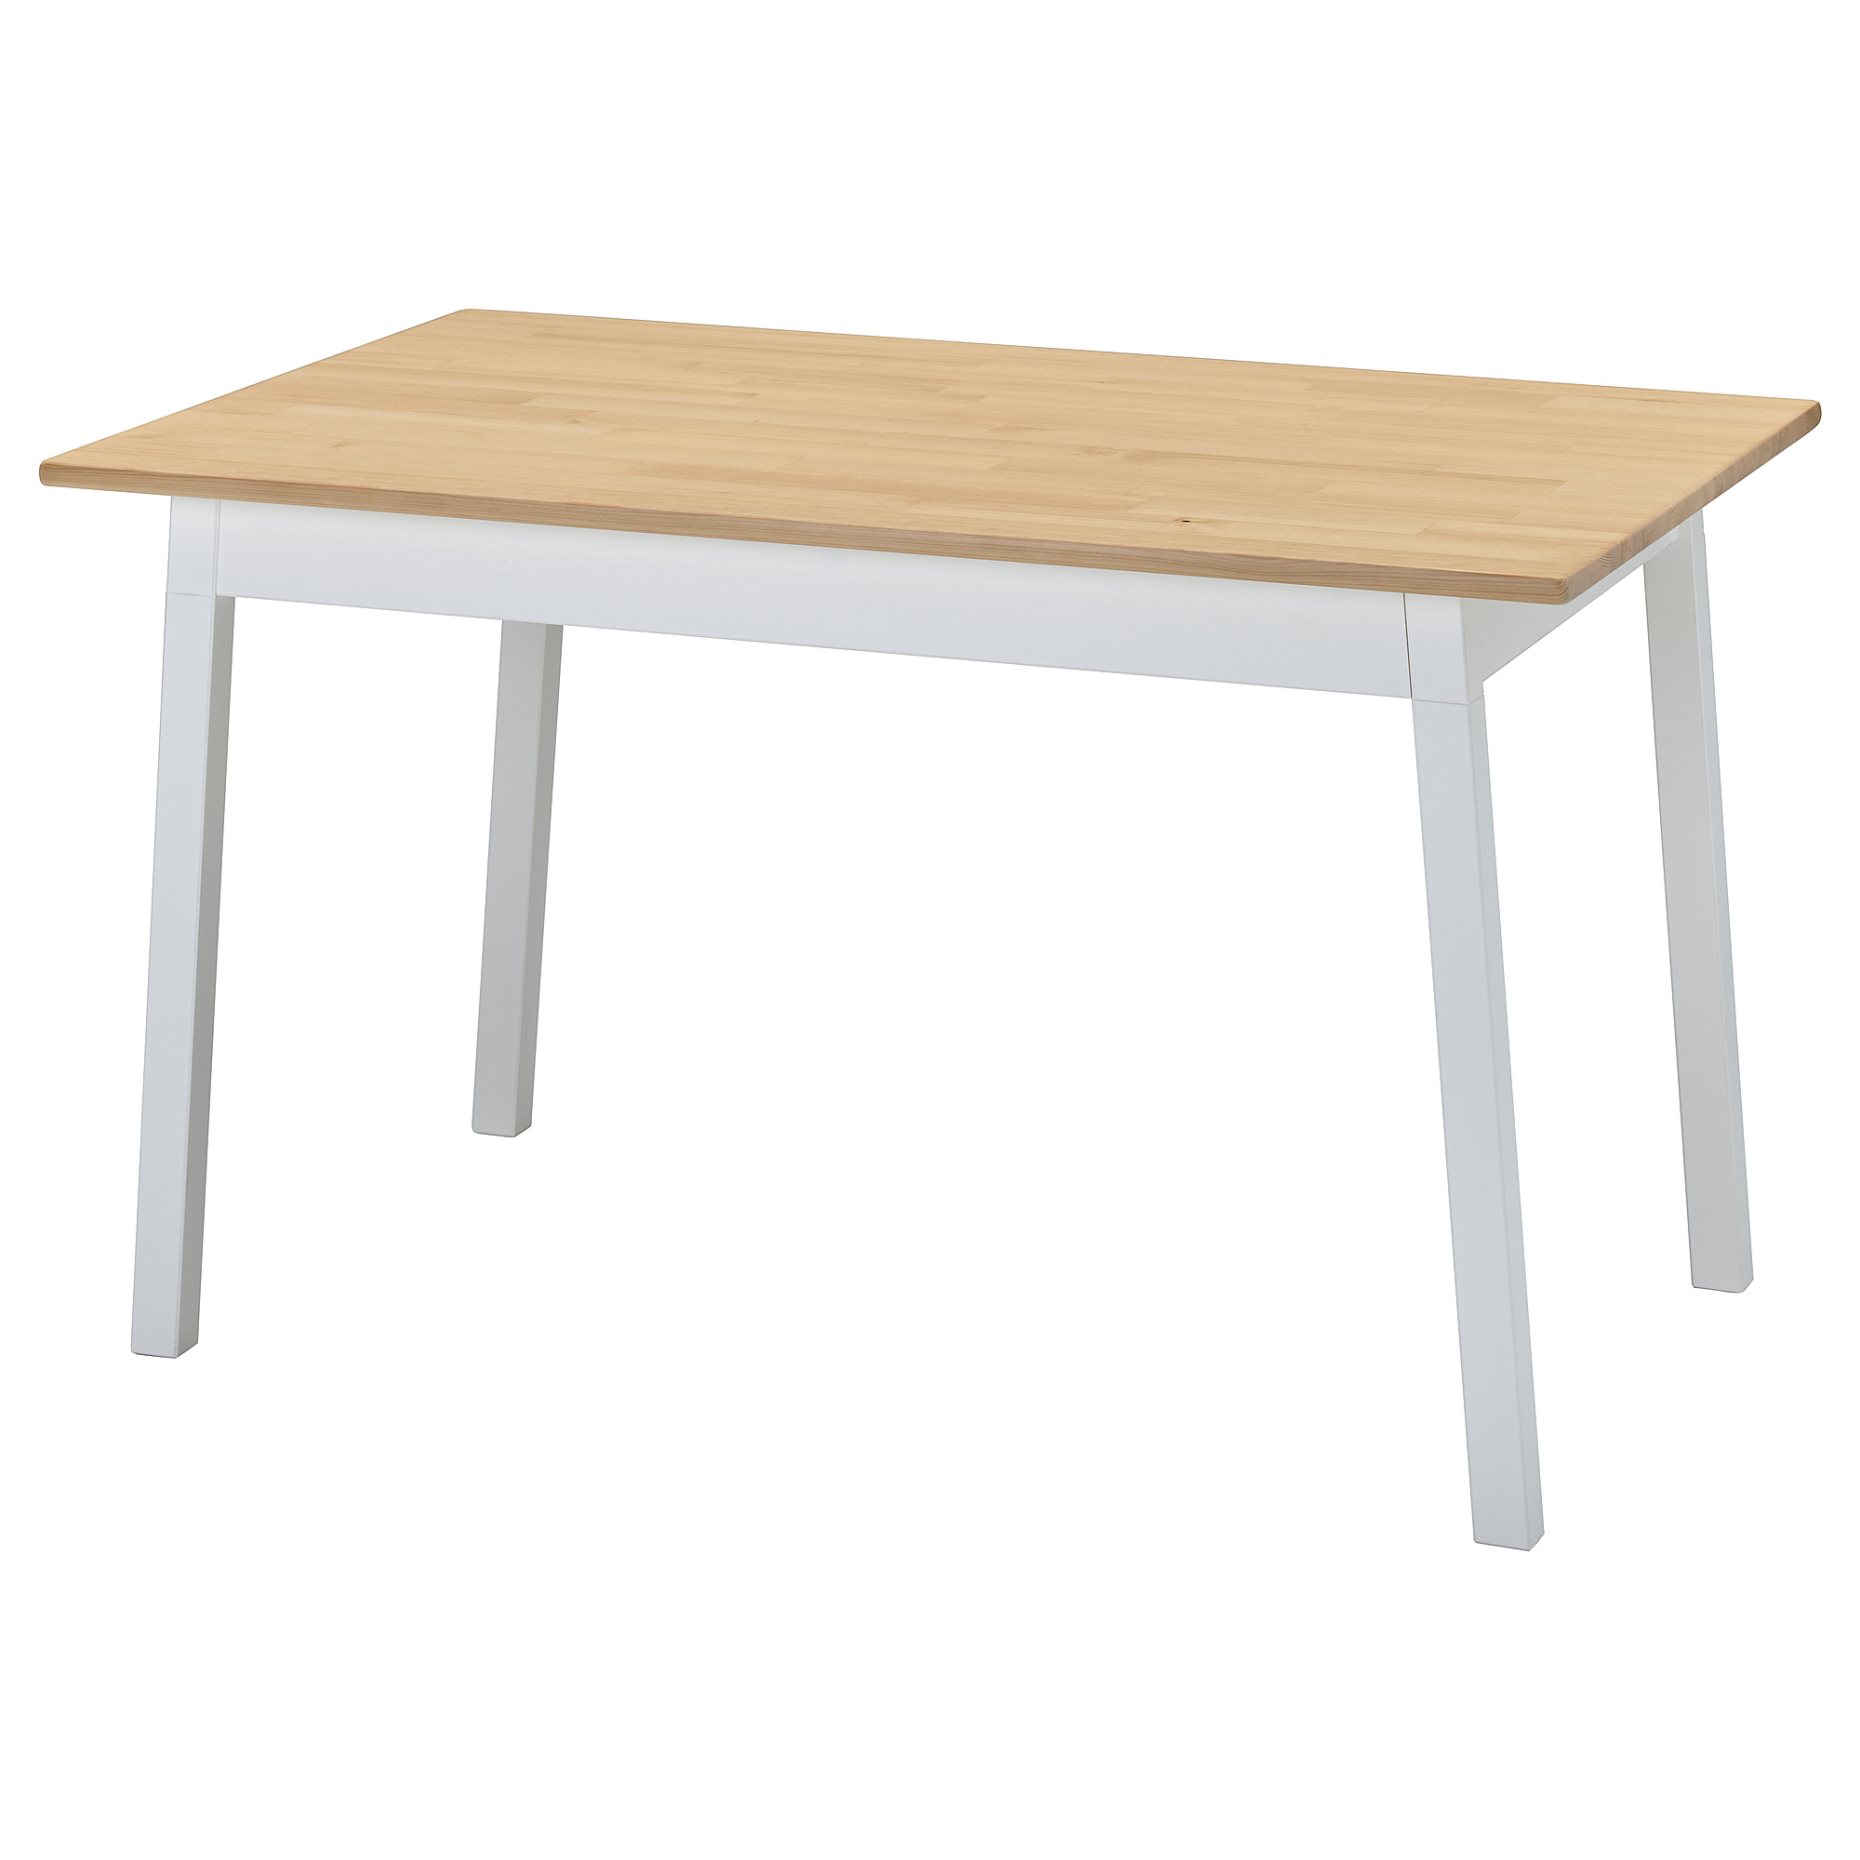 PINNTORP, table, 125x75 cm, 305.294.67